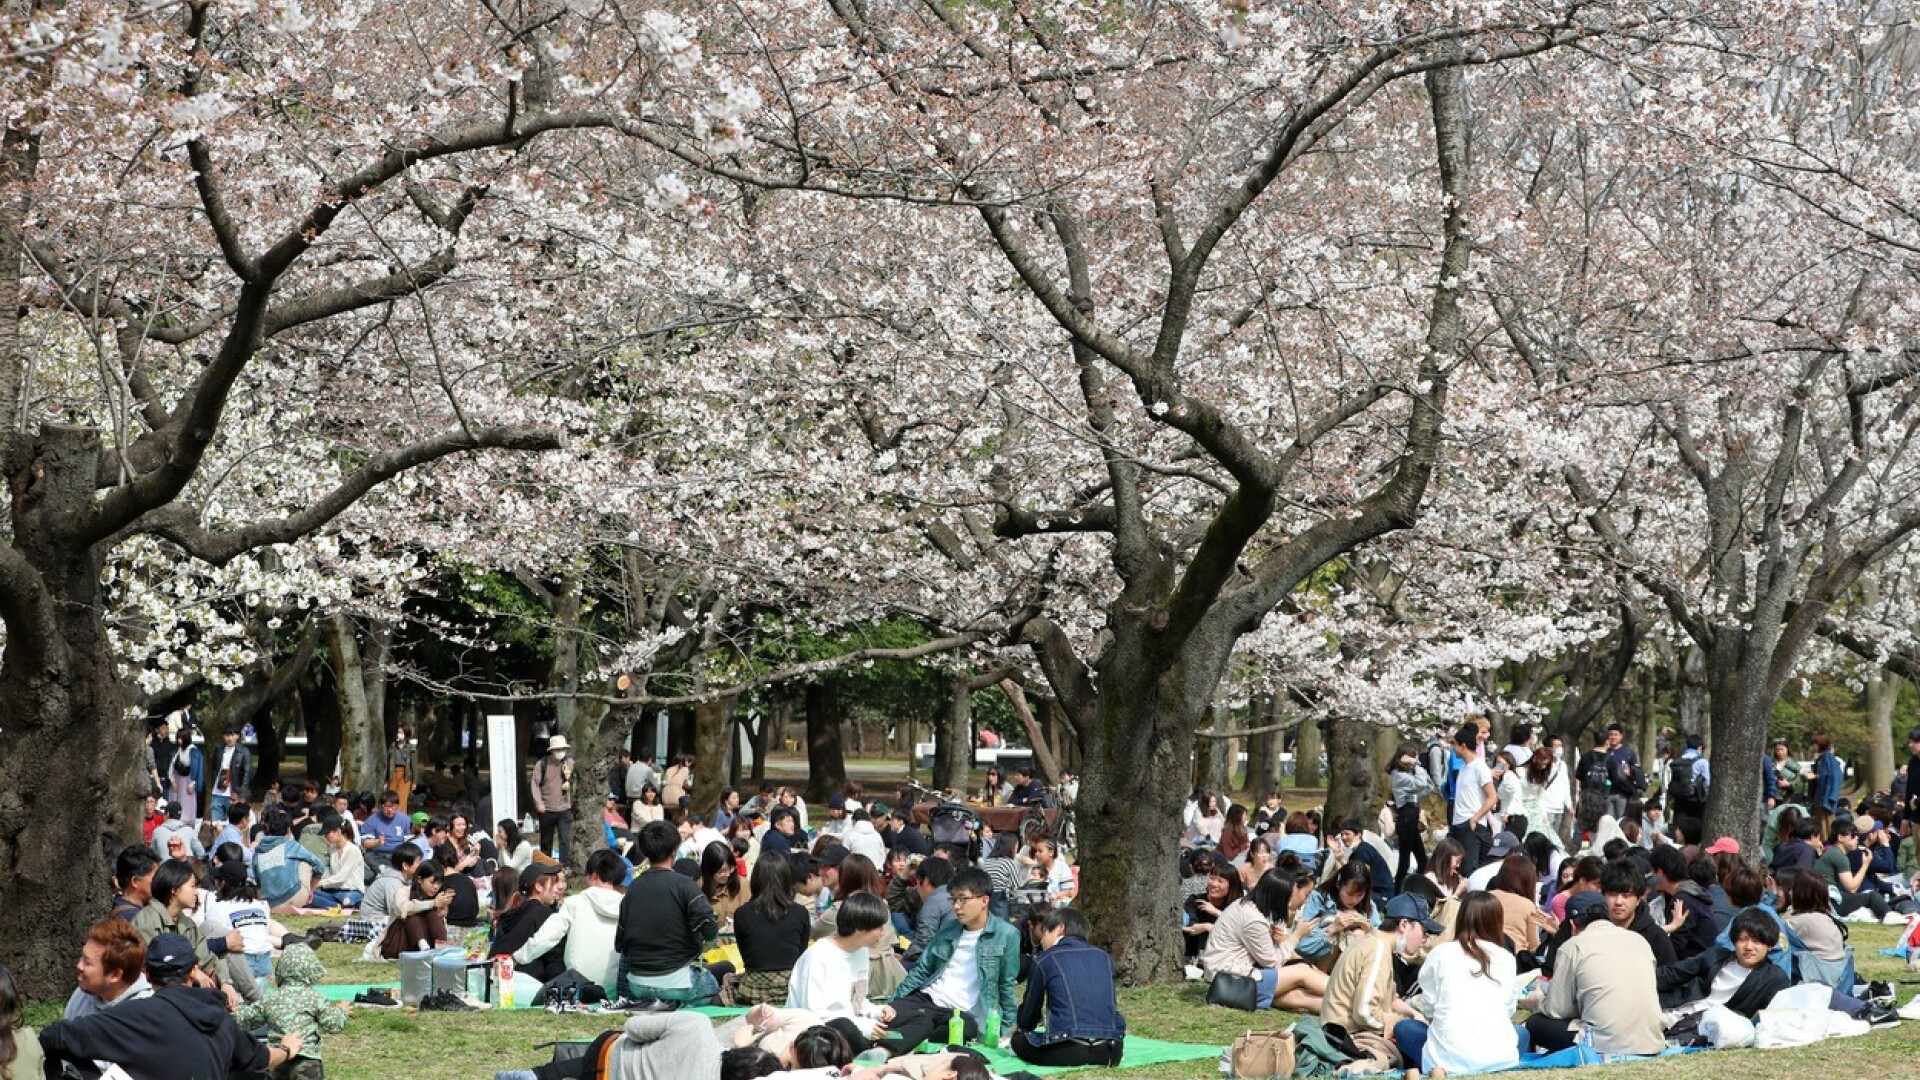 Japonezii sărbătoresc înflorirea cireșilor. Sute de tineri au ieșit la iarbă verde într-un parc din Tokyo